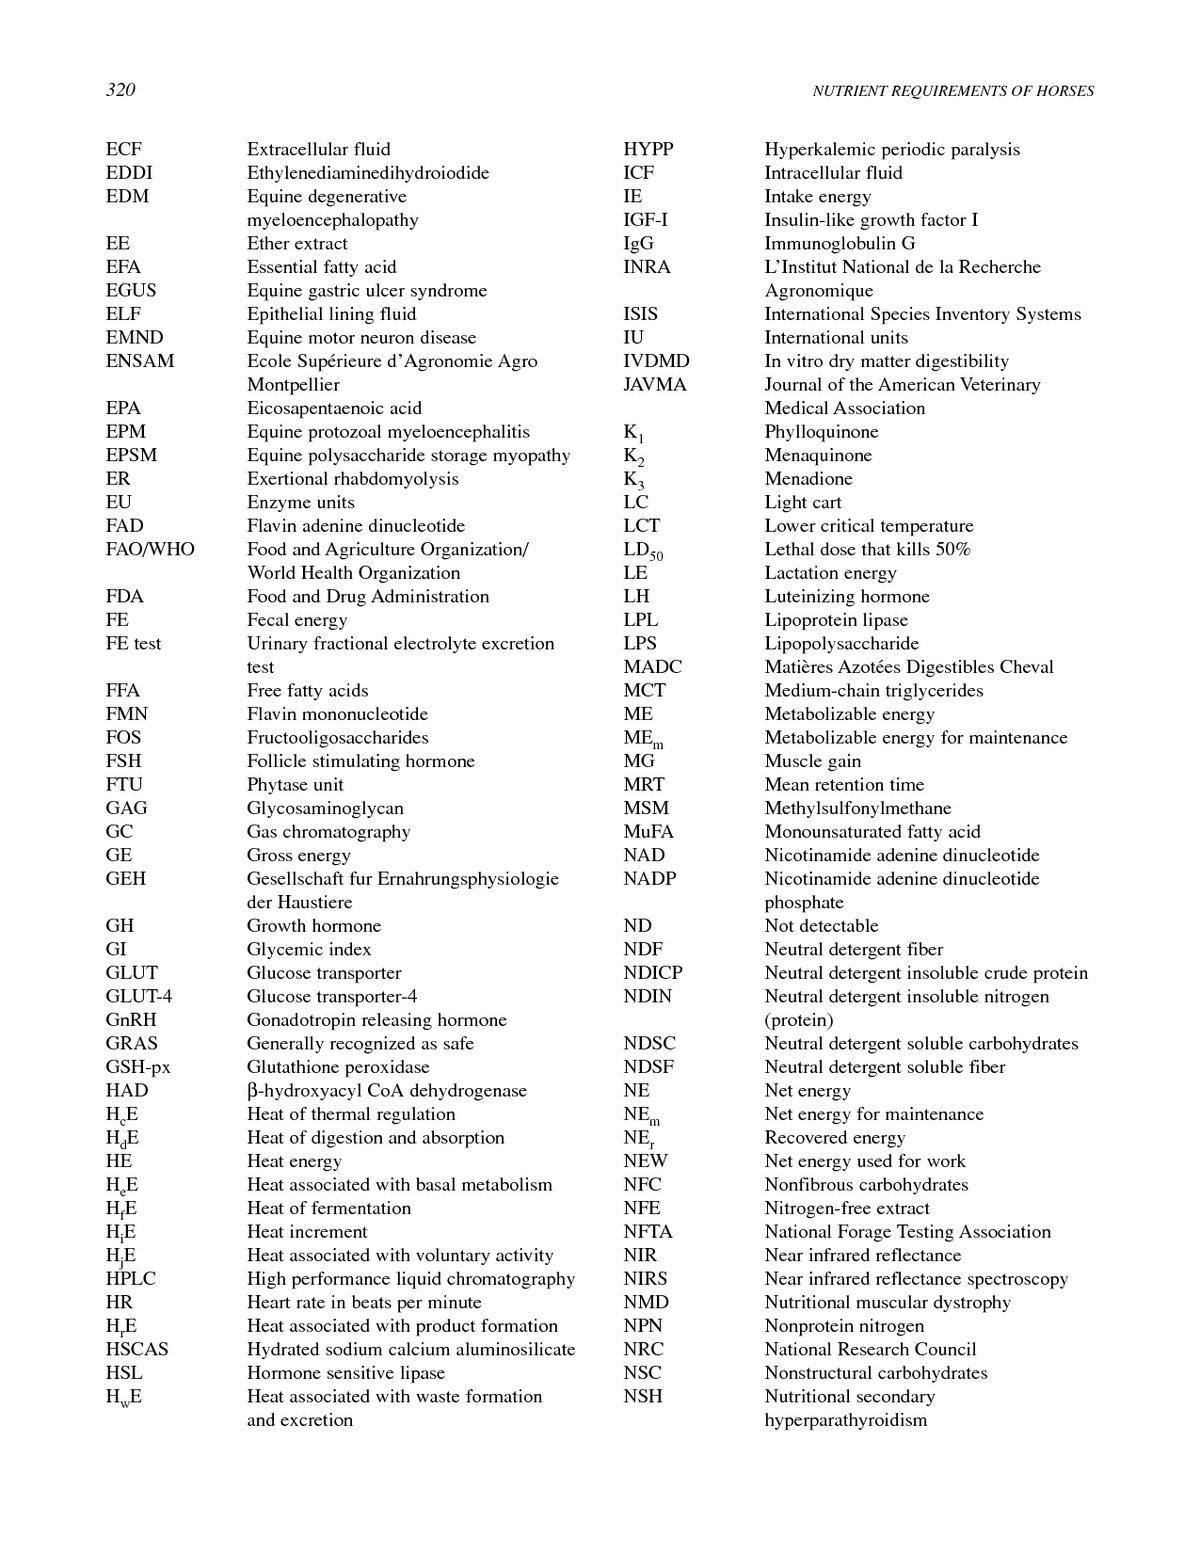 Medical Charting Abbreviations And Symbols